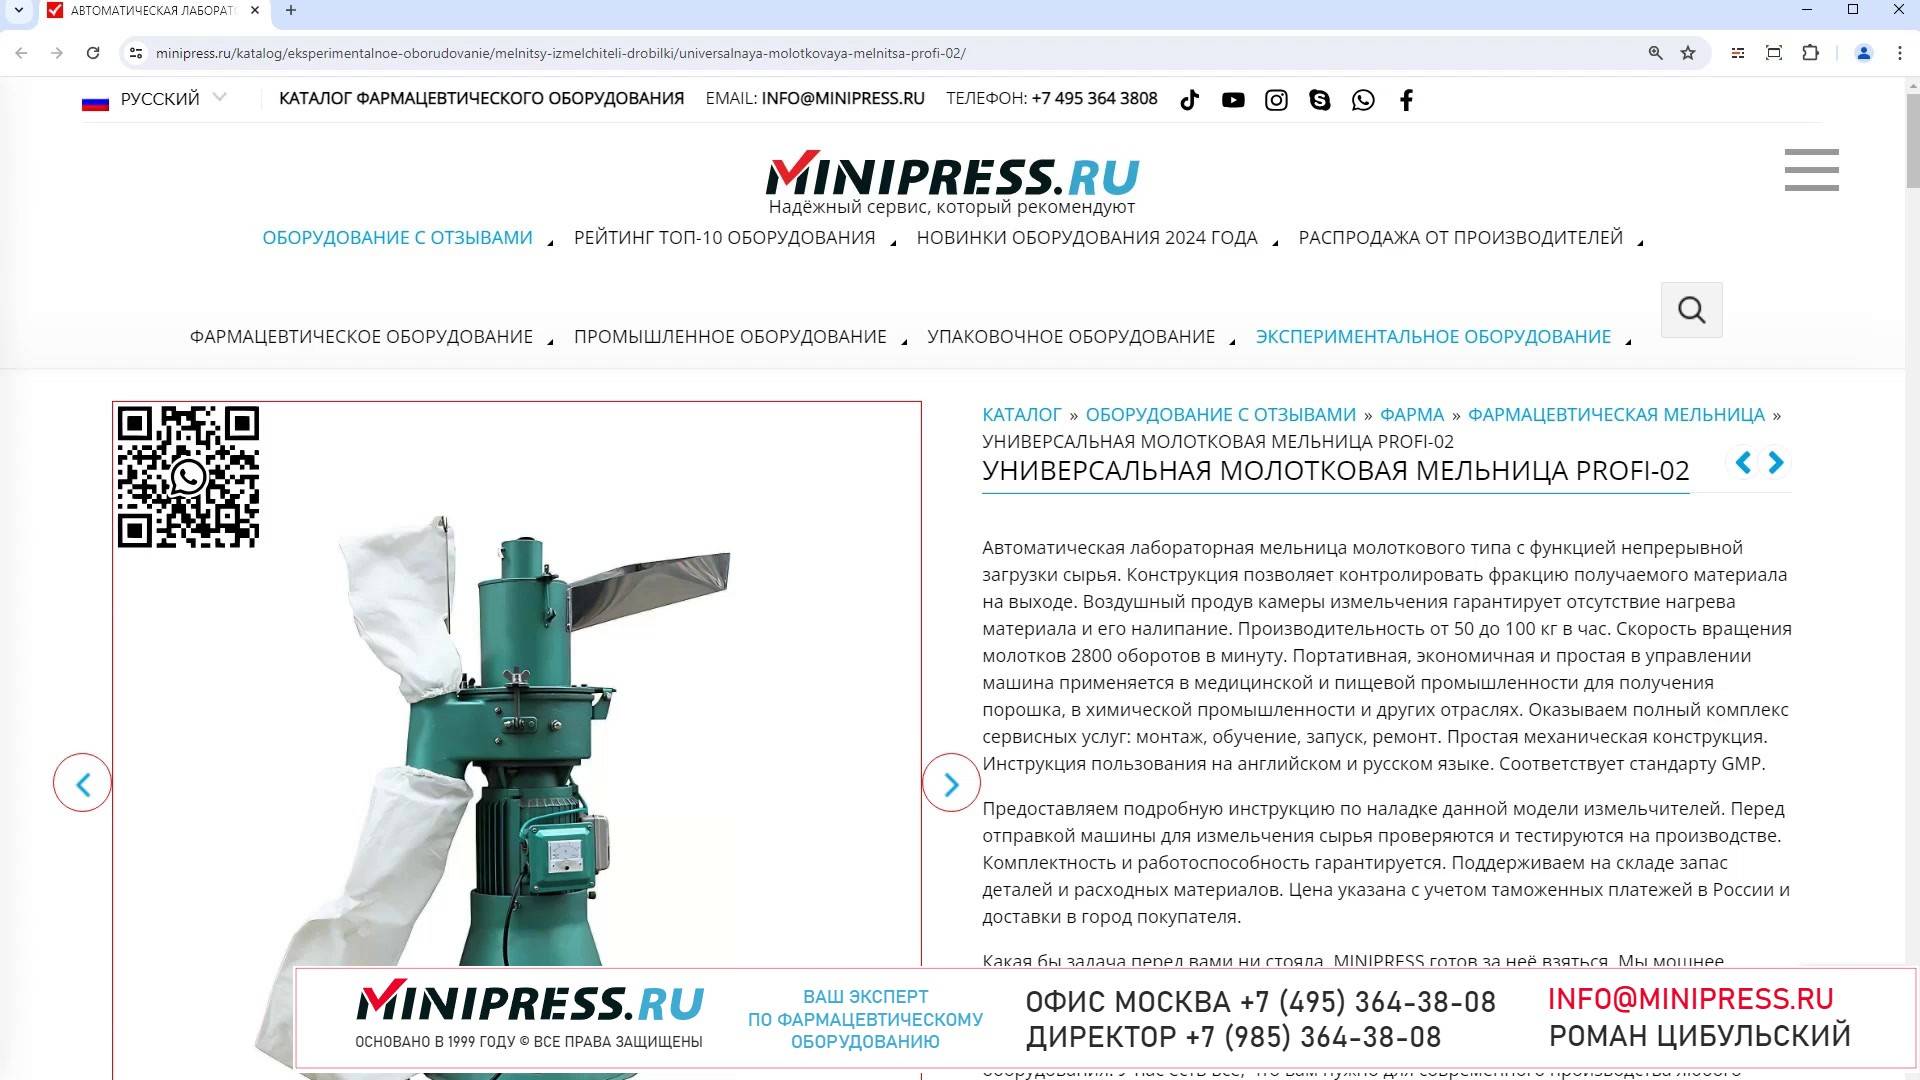 Minipress.ru Универсальная молотковая мельница PROFI-02